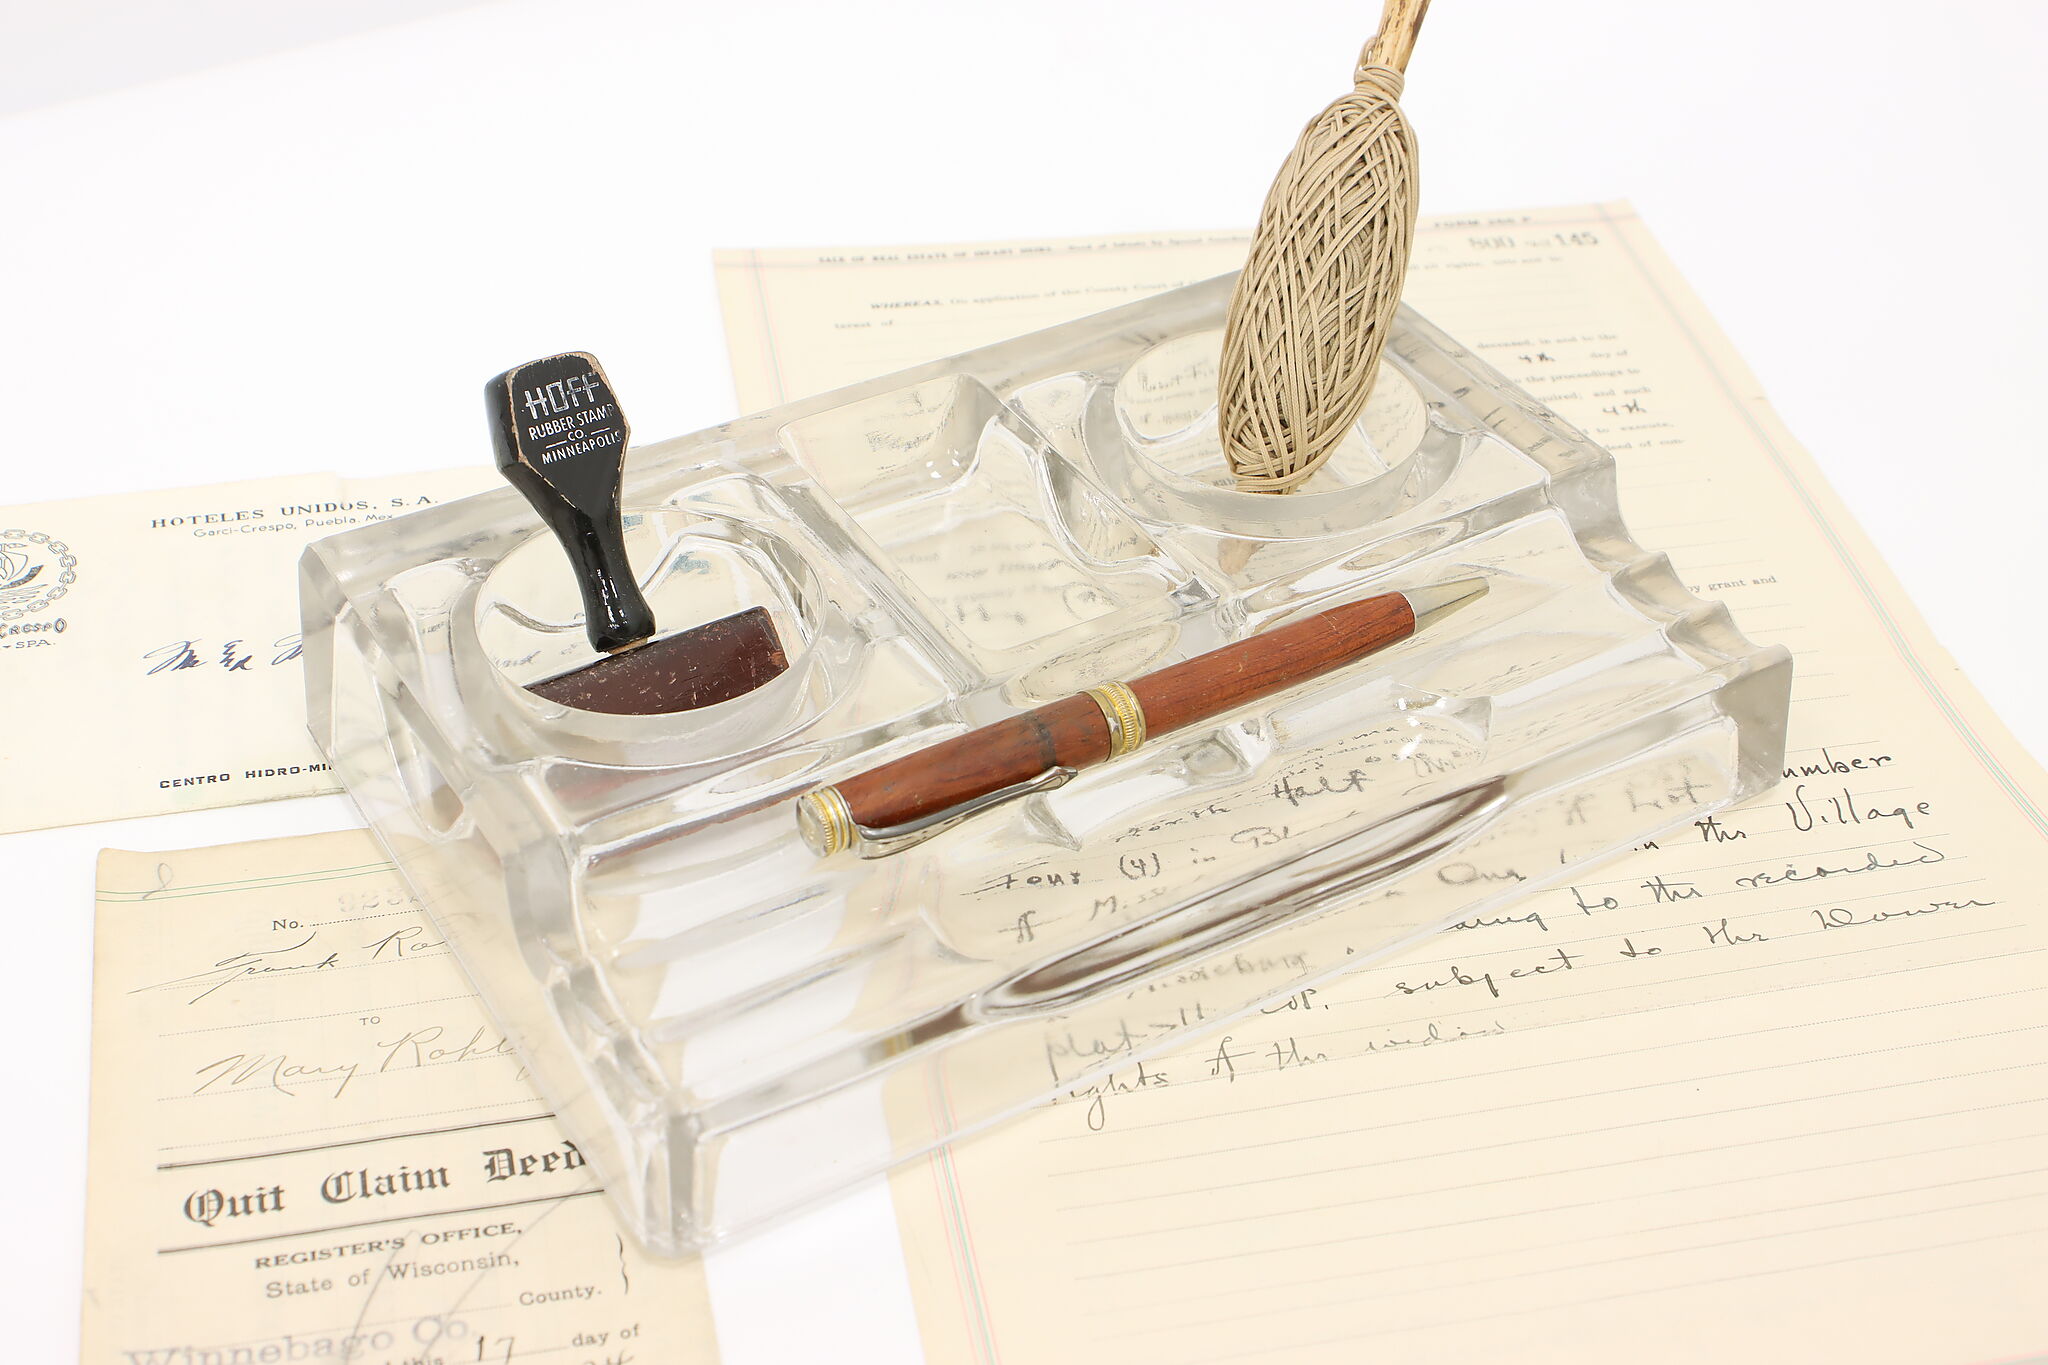 4 Pcs Crystal Glass Pen Set with Pen Holder 2 Ink Dip Pen for